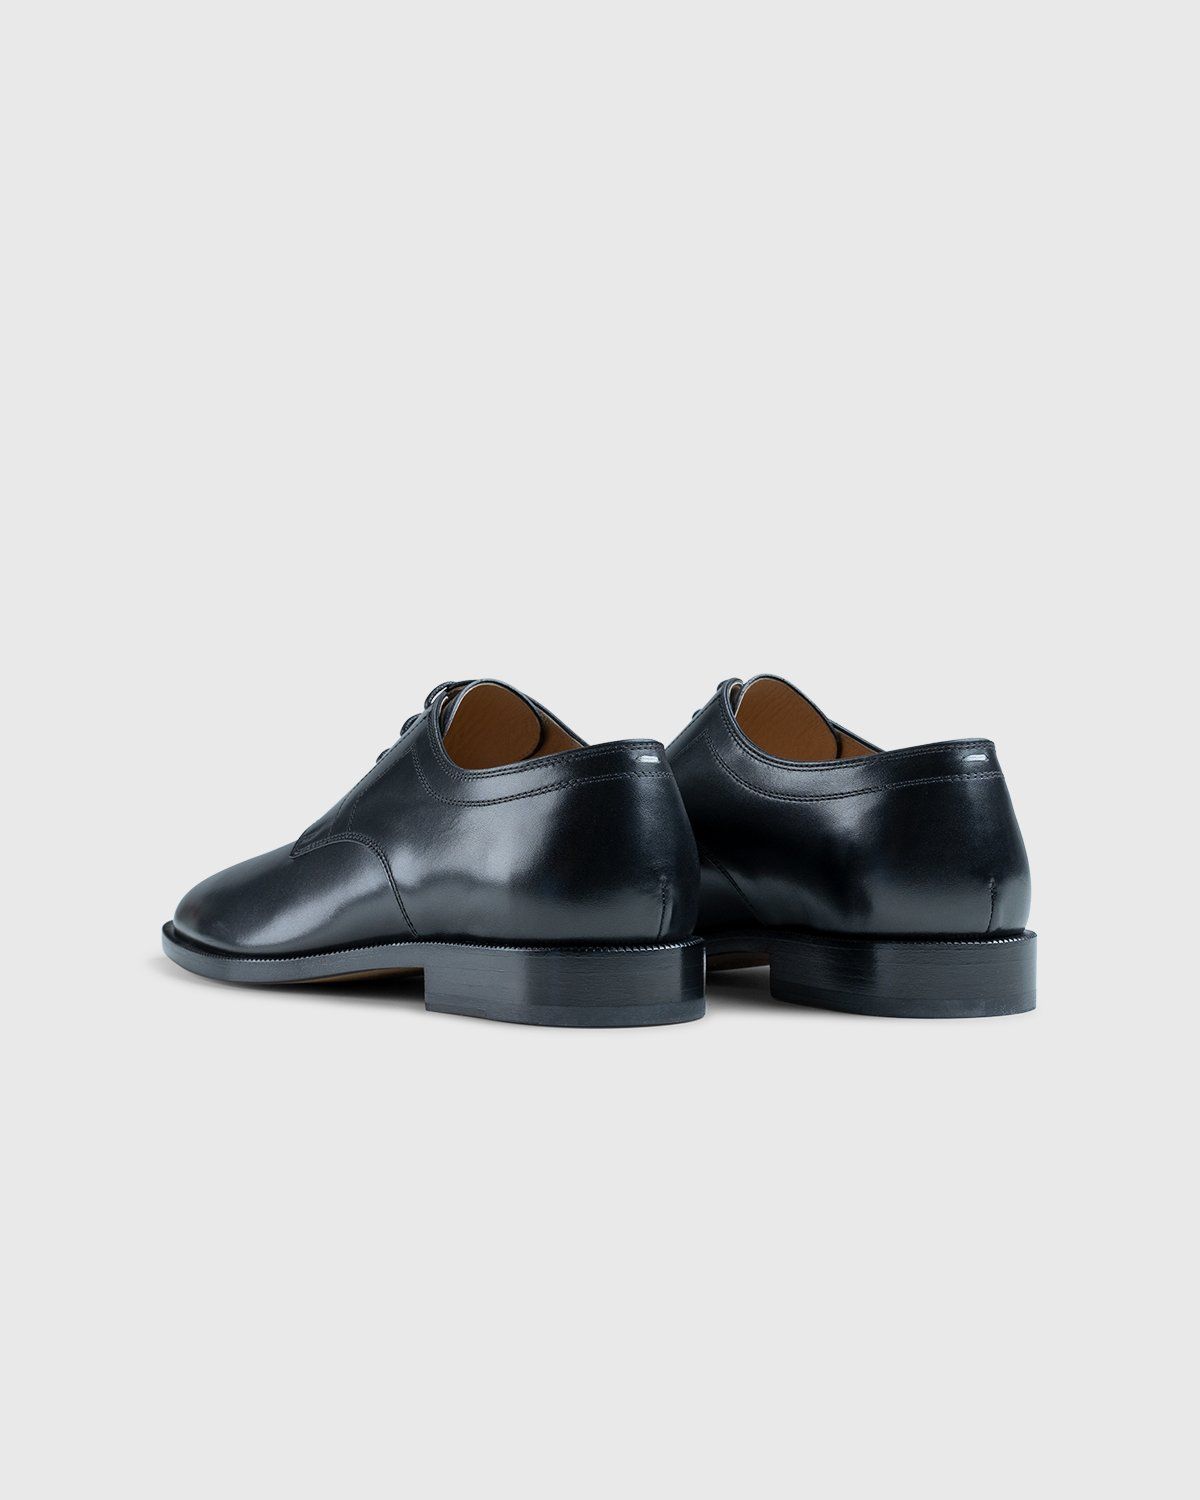 Maison Margiela – Tabi Lace-up Shoes Black - Shoes - Black - Image 3